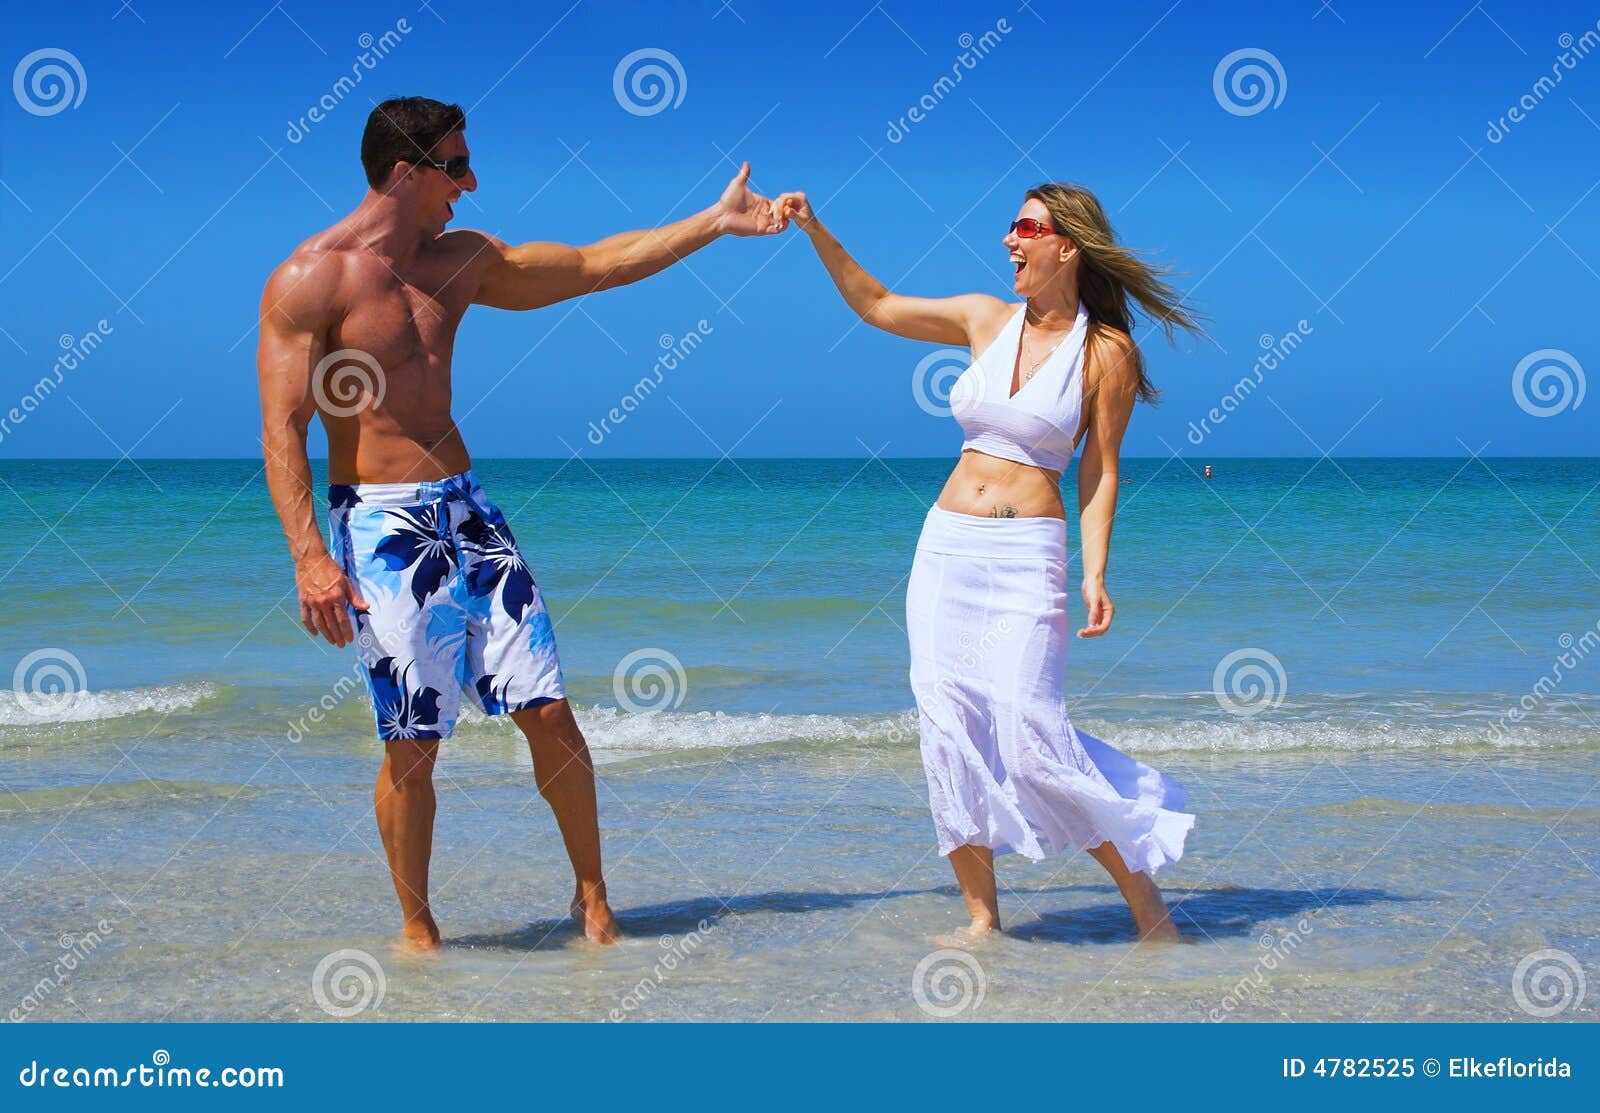 Flirten am strand